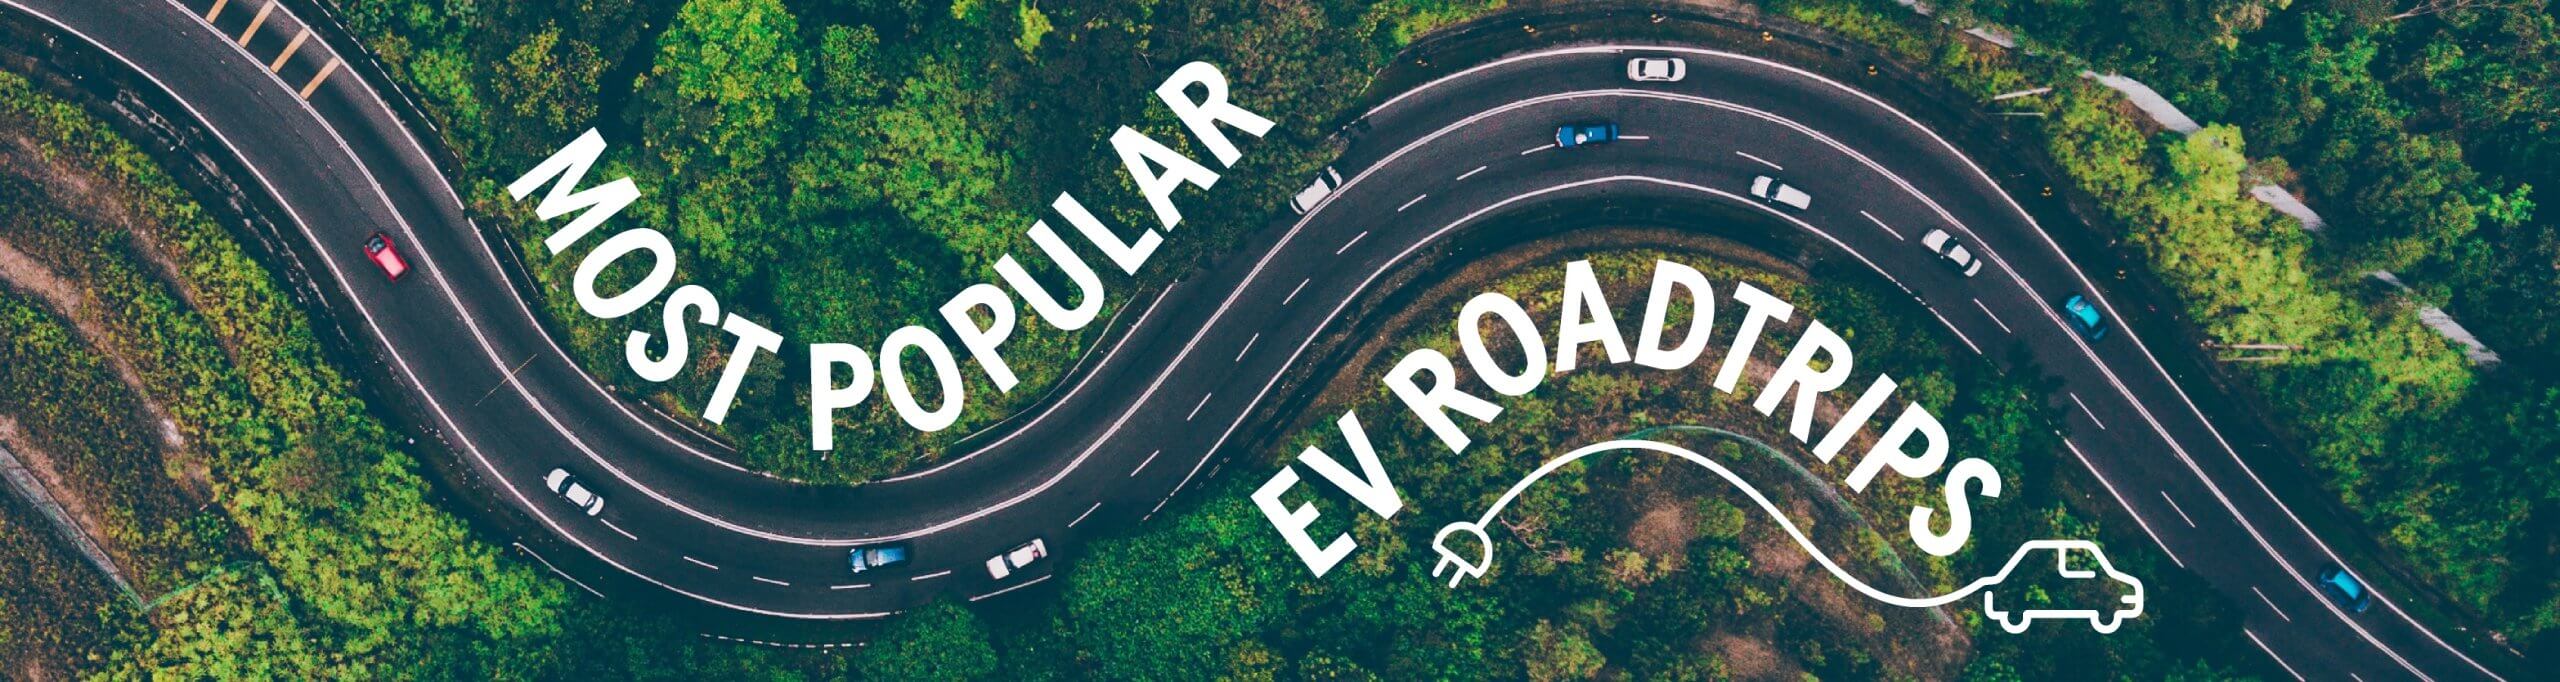 Most Popular EV Roadtrips